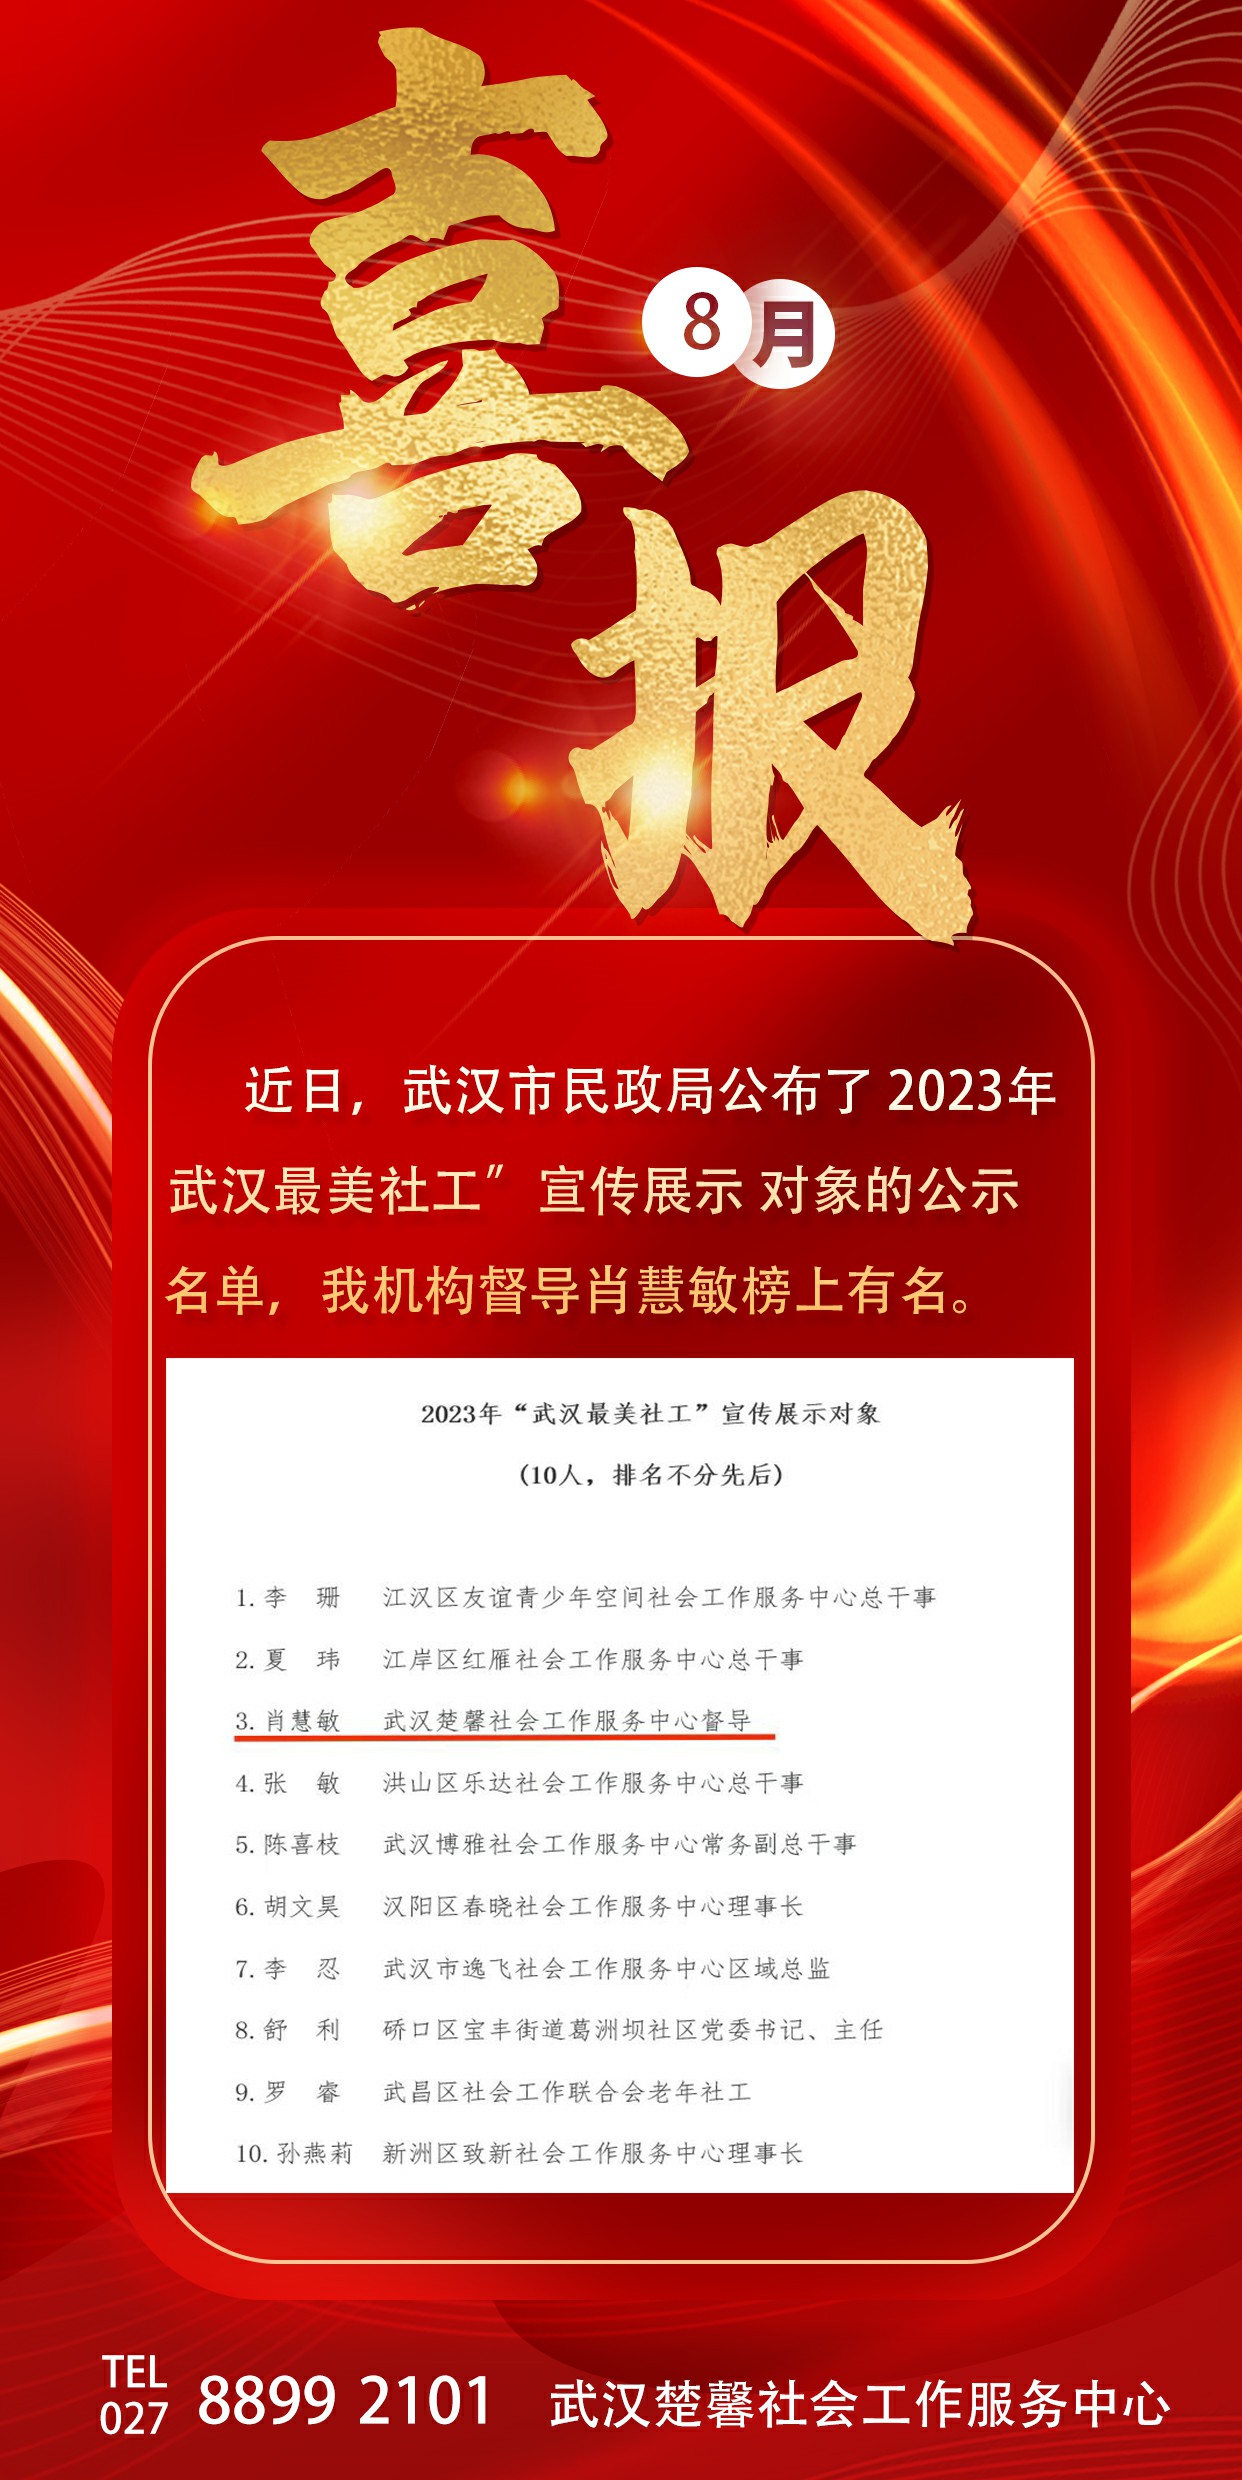 喜报！我机构督导肖慧敏入选2023年“武汉最美社工”宣传展示对象的公示名单